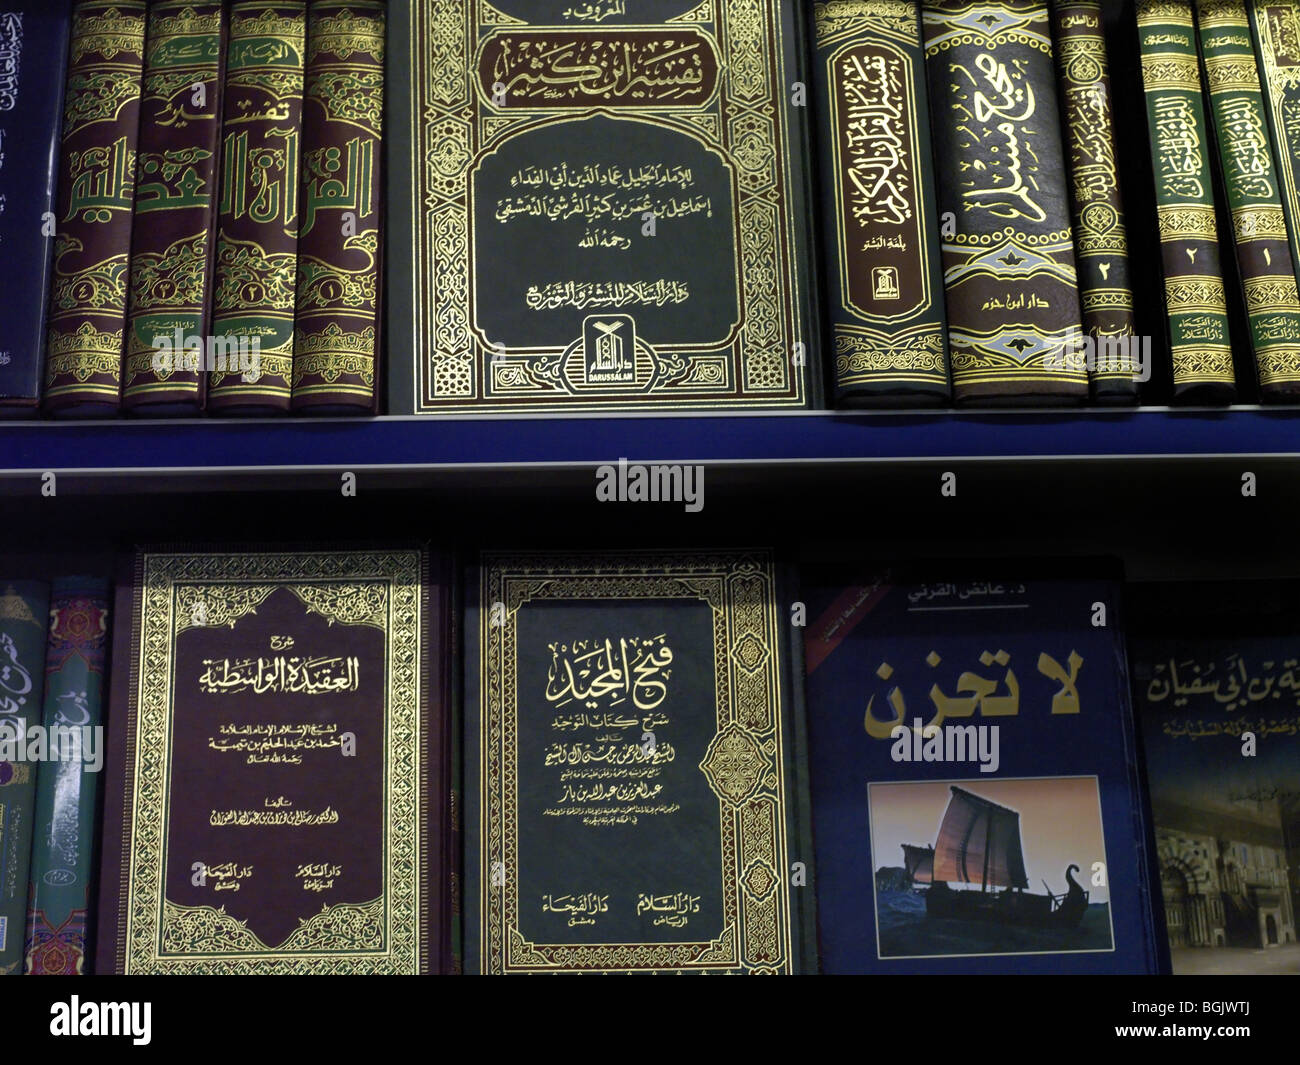 Livres librairie islamique de la mosquée de Regent's Park Londres Angleterre Banque D'Images